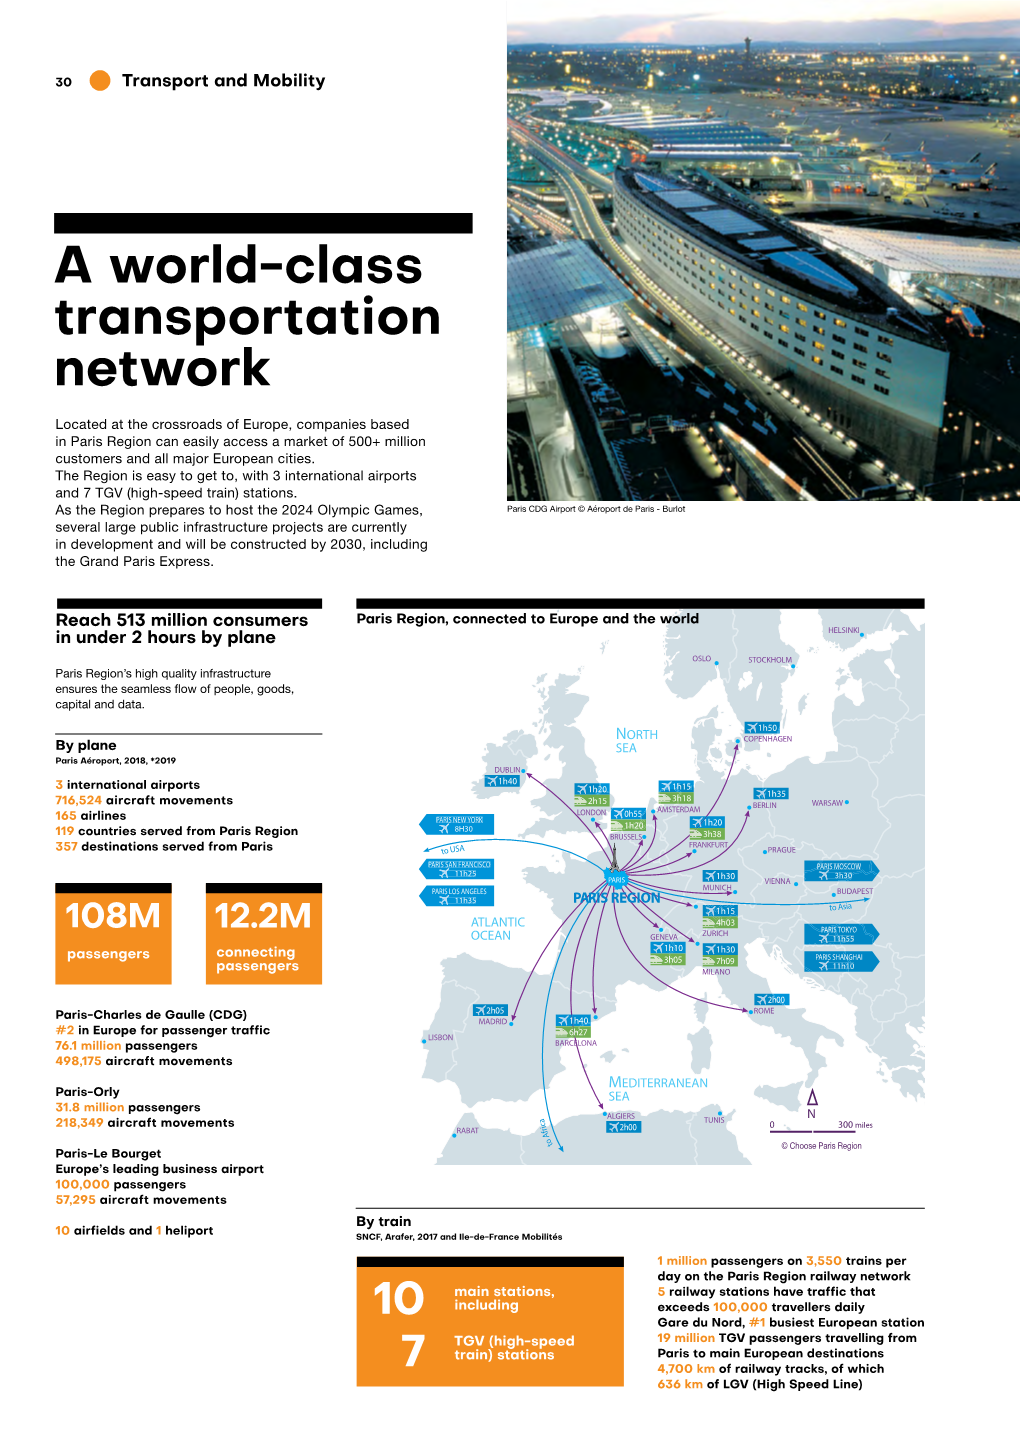 A World-Class Transportation Network